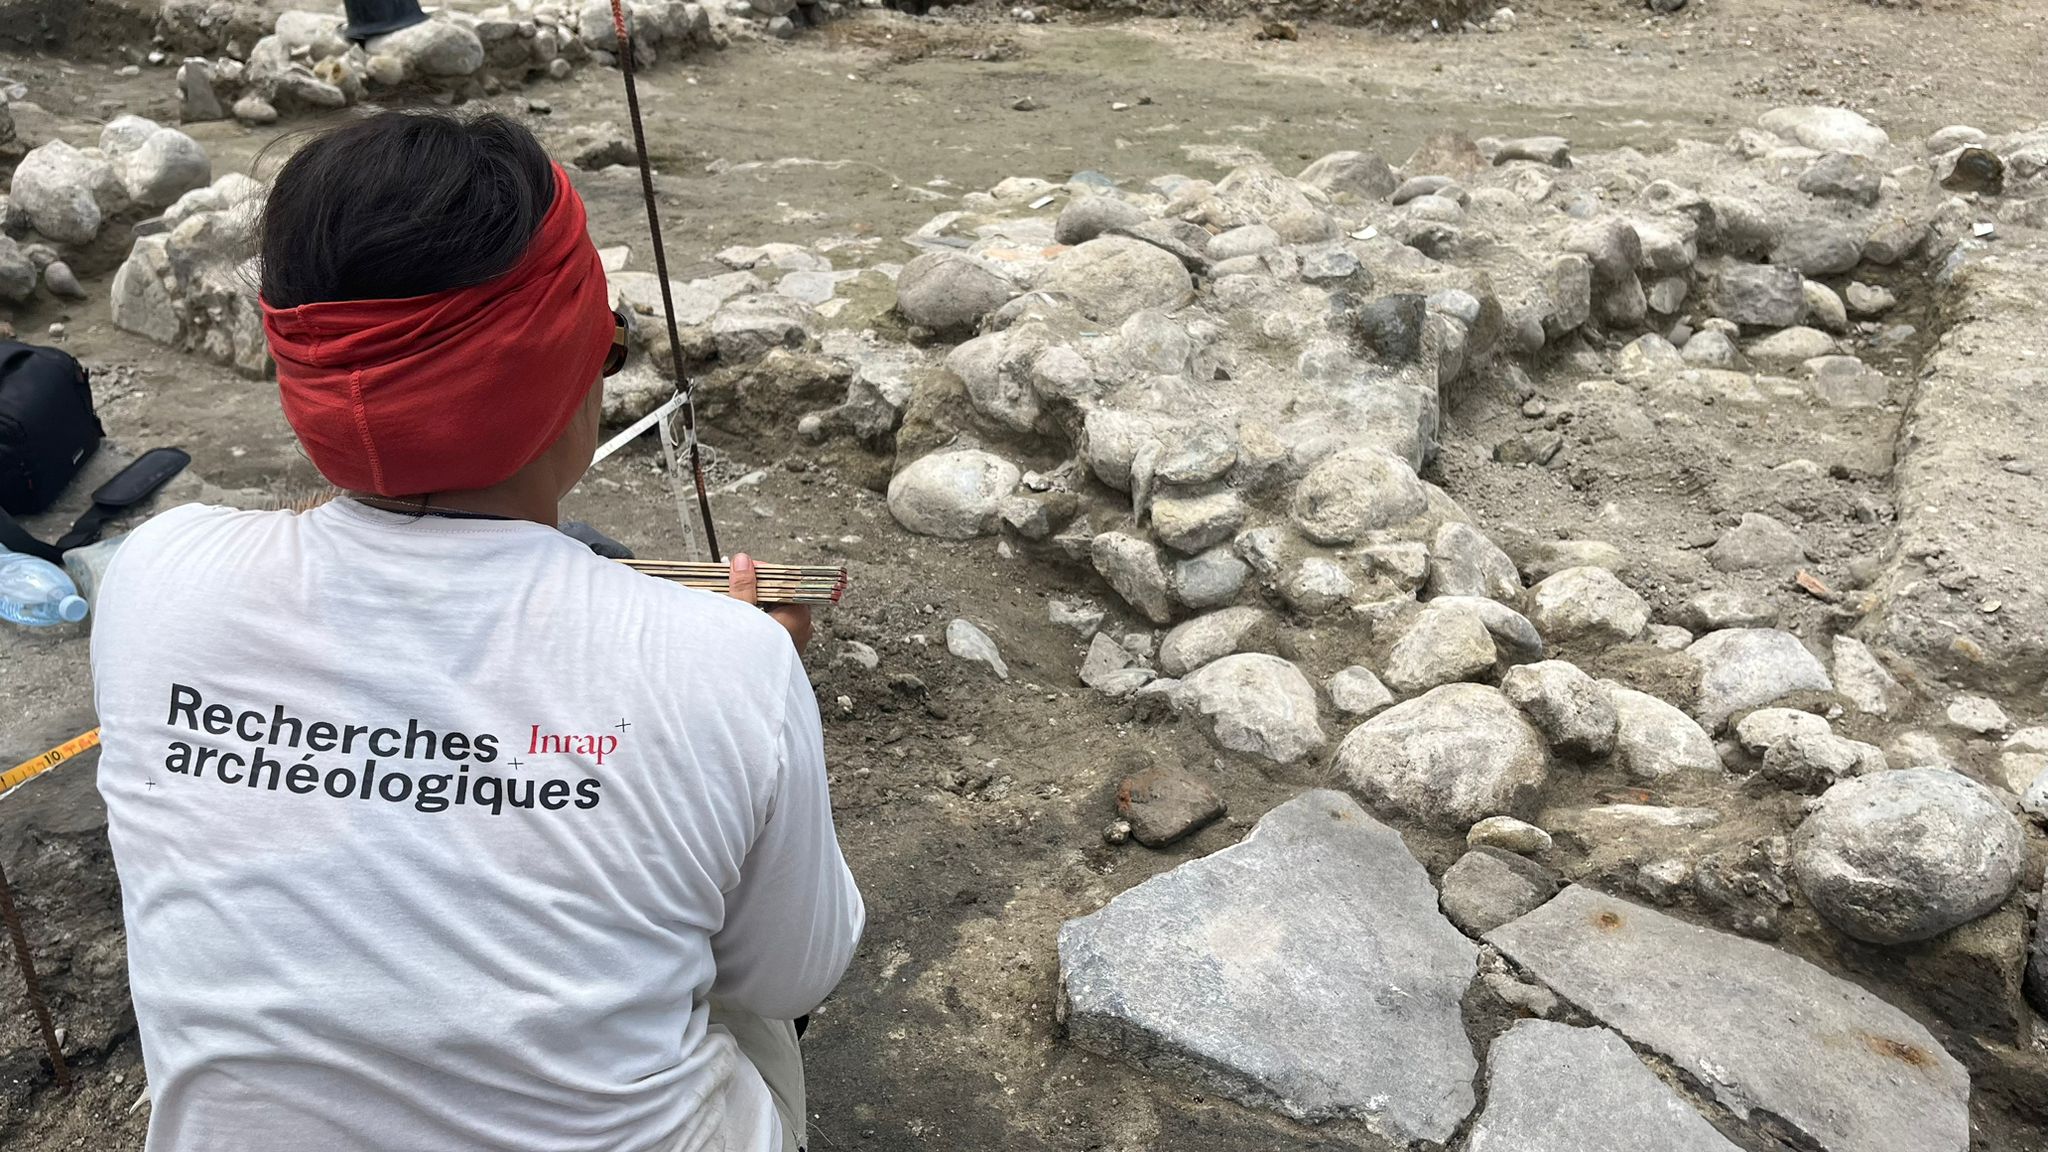     Sous le parking de la Savane à Fort-de-France, les archéologues examinent les vestiges du 18e siècle

